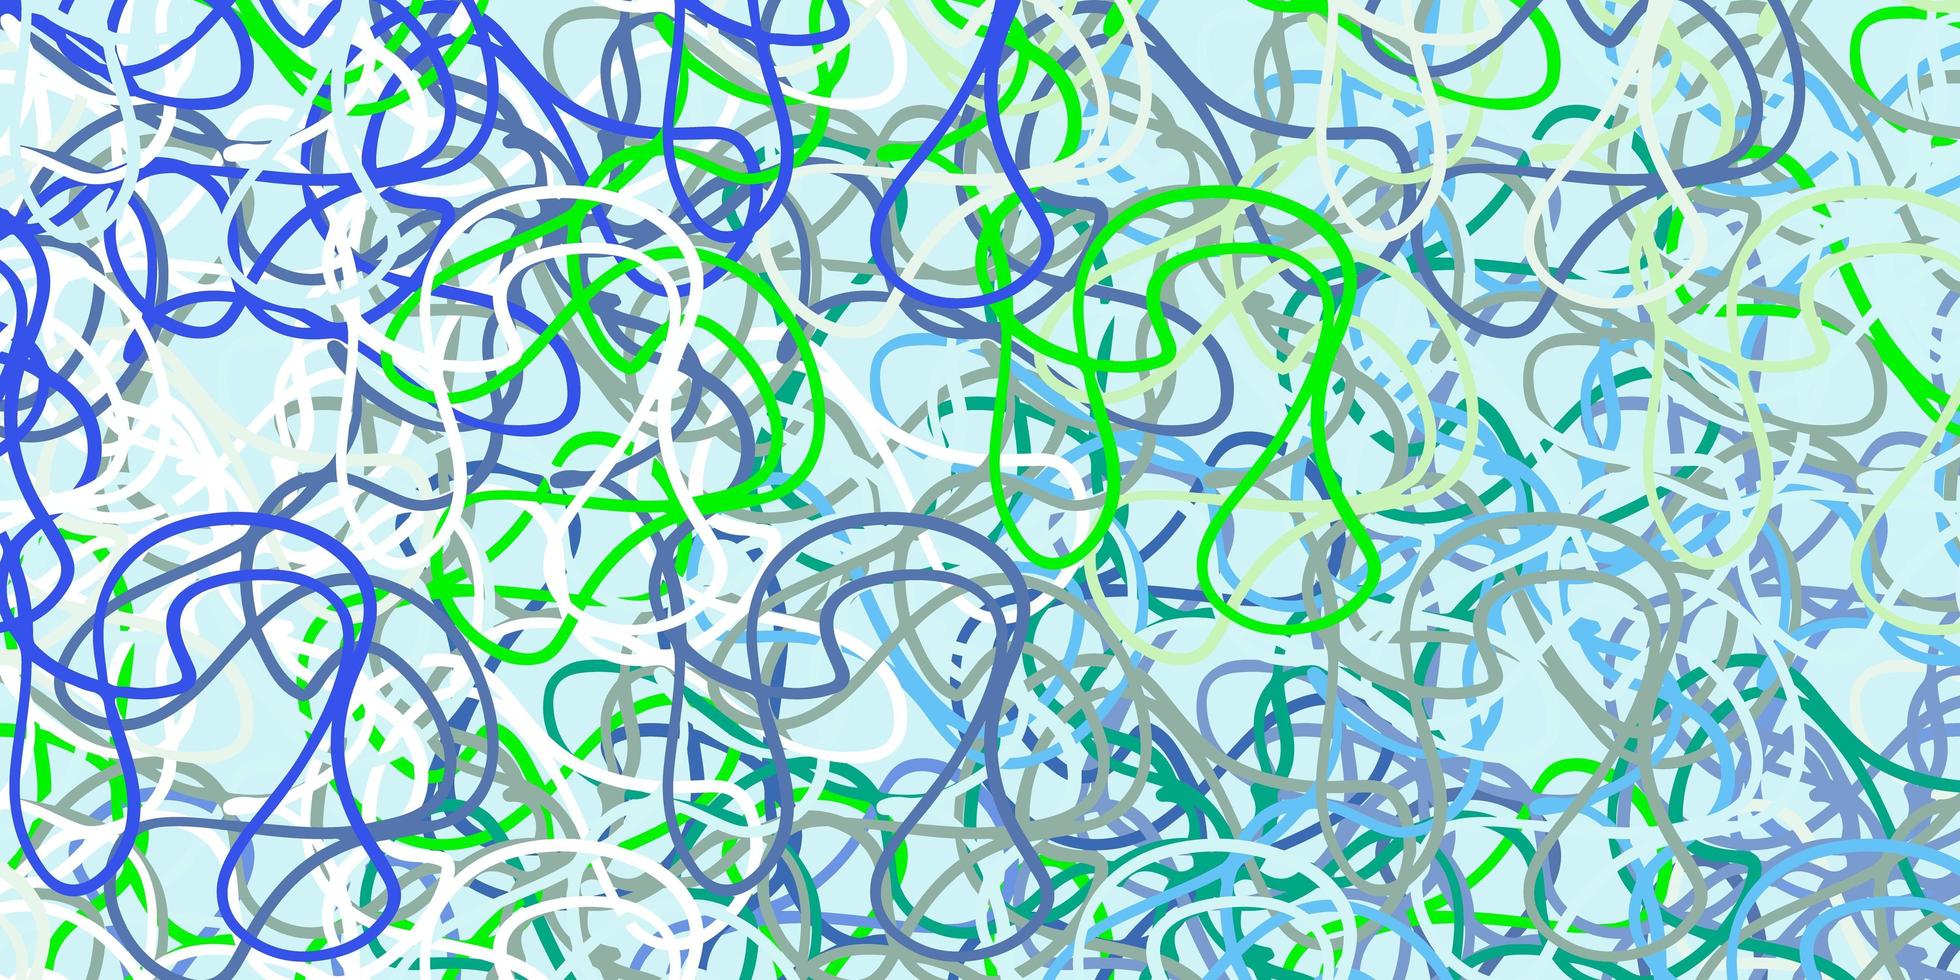 fundo vector azul e verde claro com linhas irônicas.